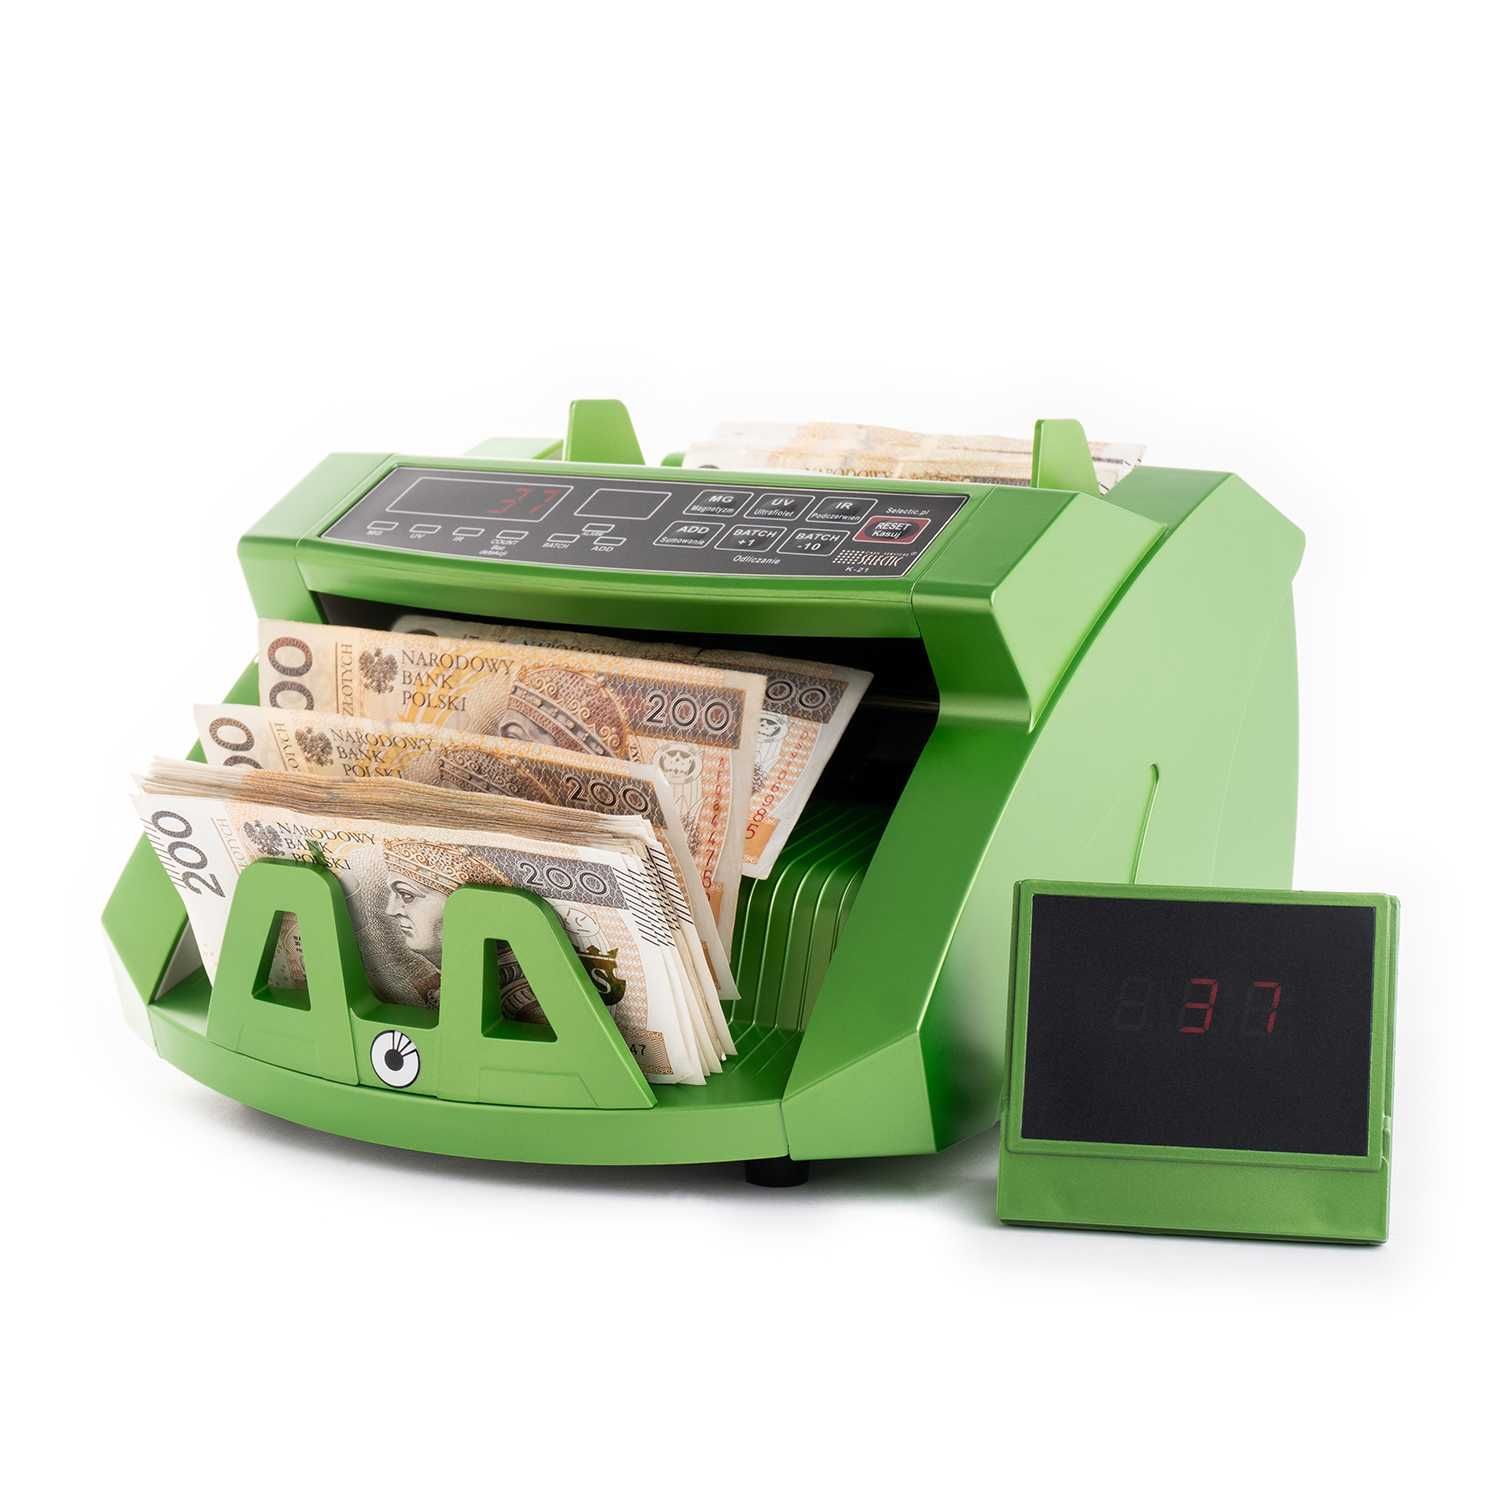 Zielona liczarka do banknotów SELECTIC K-21 COLOR GREEN